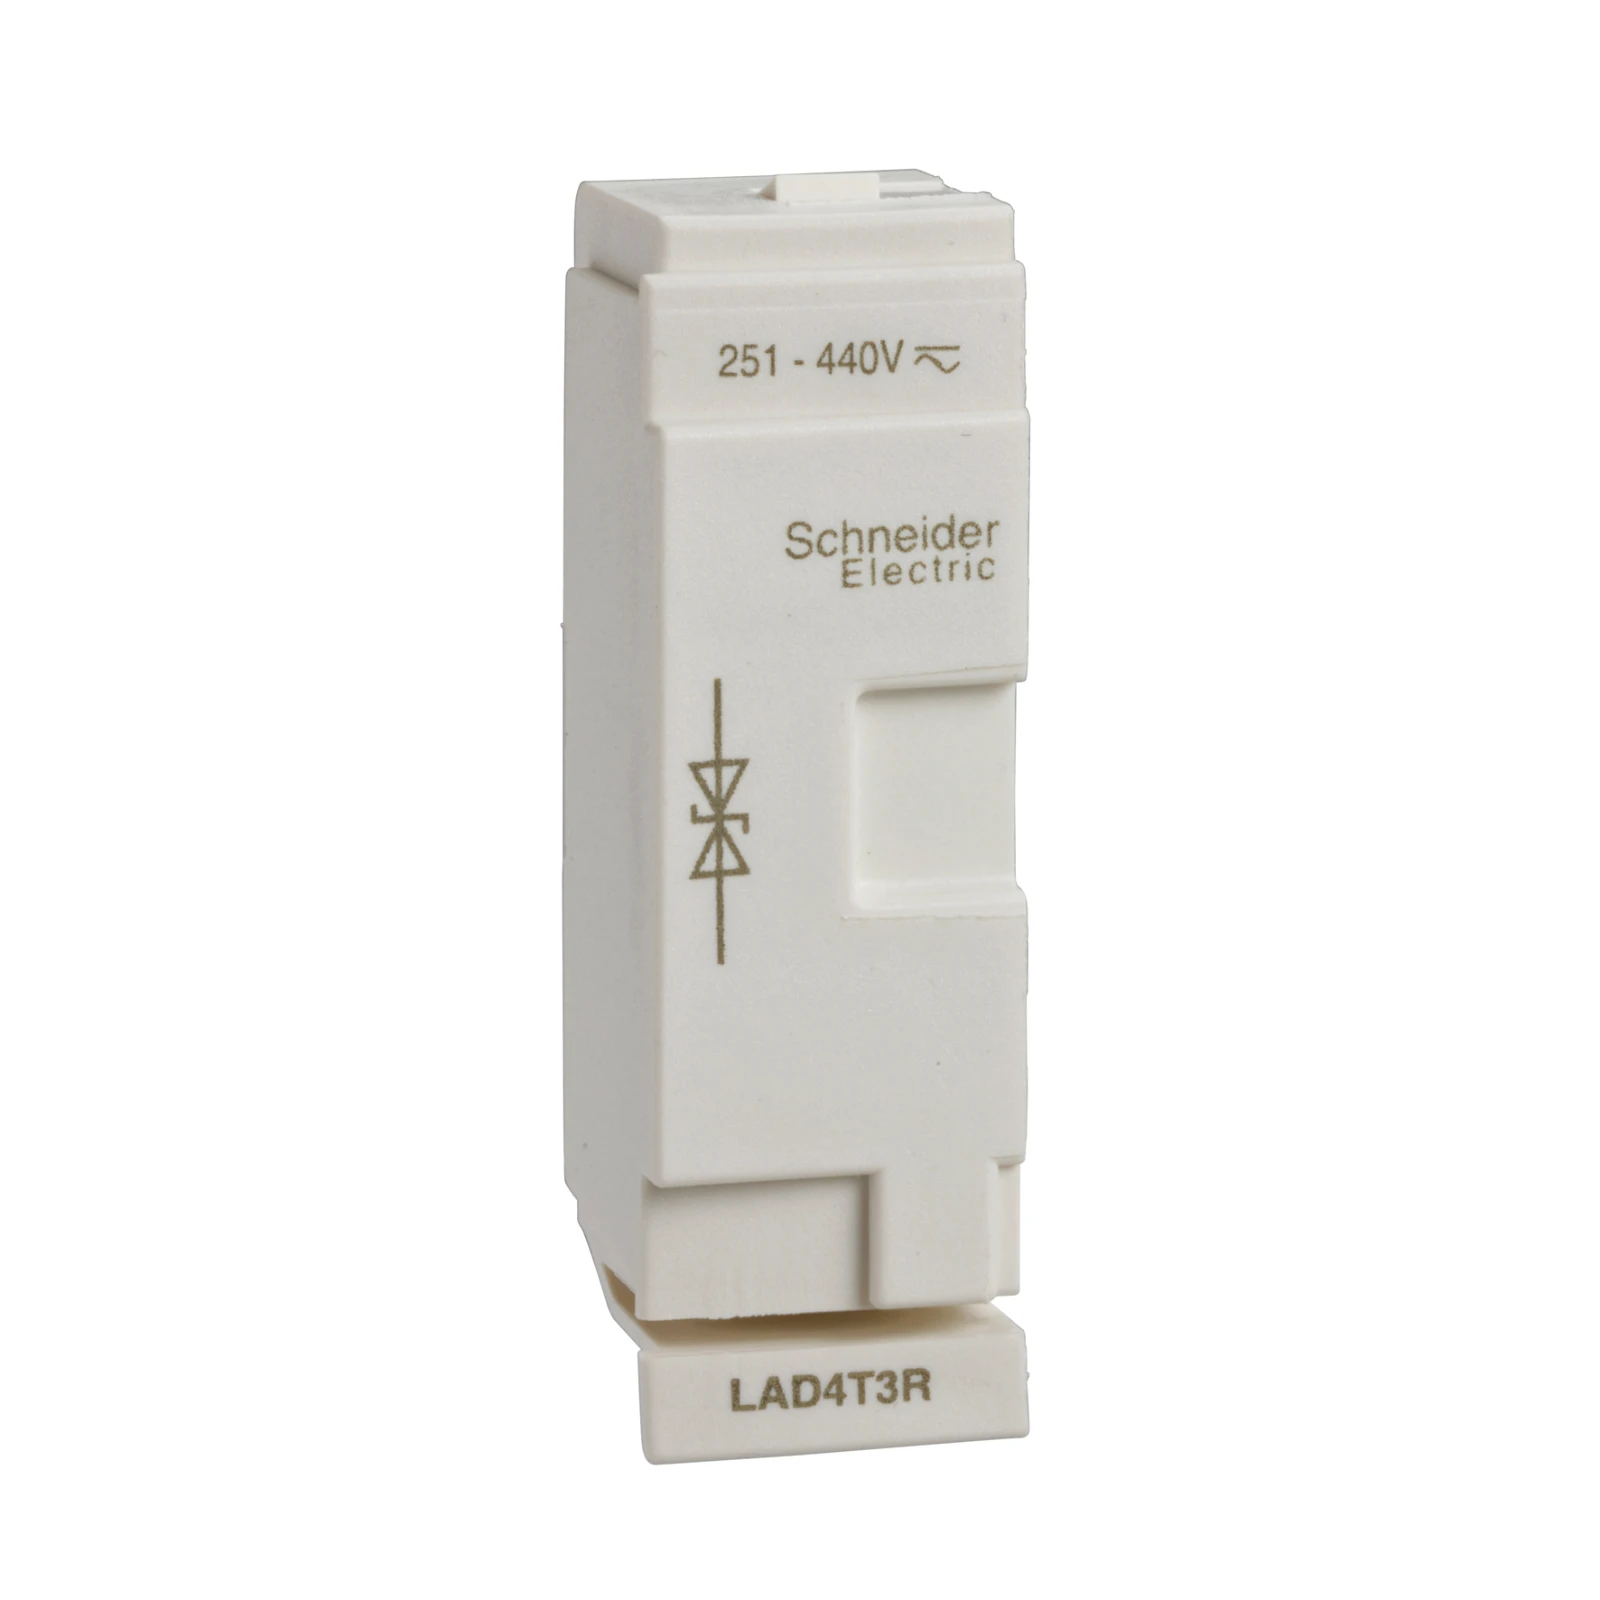 2337229 - Schneider Electric LAD4T3R